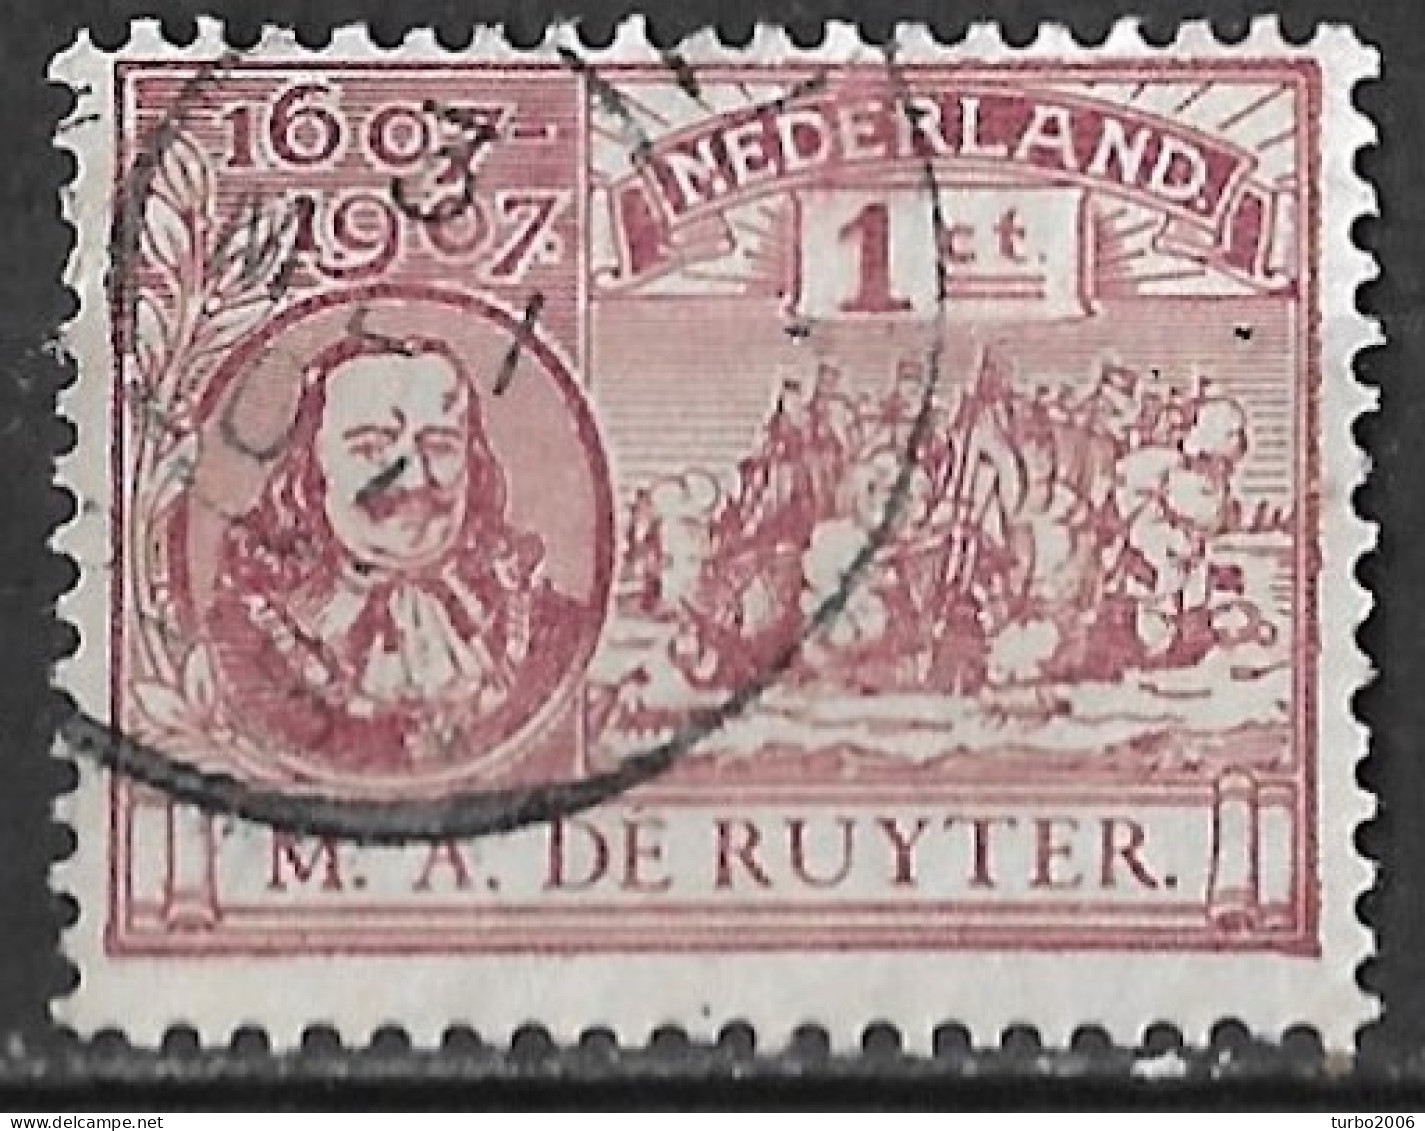 Plaatfout Rode Vlek In De 1e N Van Nederland (zegel 16 X) In 1907 De Ruyterzegel 1 Ct Roodviolet NVPH 88 PM Leidraad 38 - Plaatfouten En Curiosa